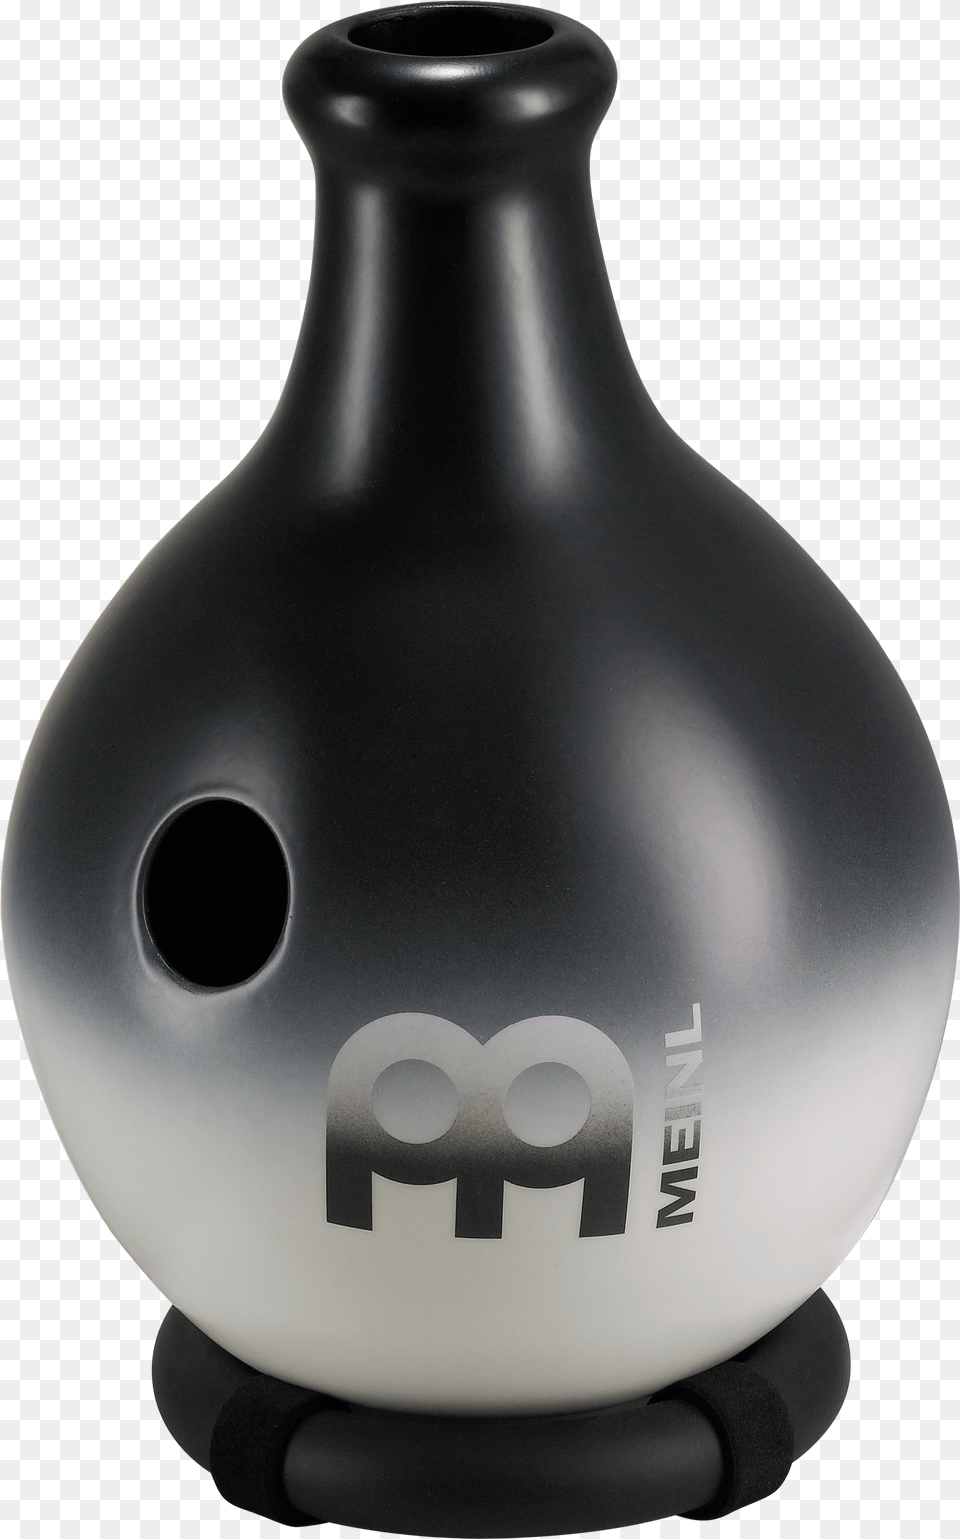 Image, Jar, Pottery, Vase, Bottle Free Transparent Png